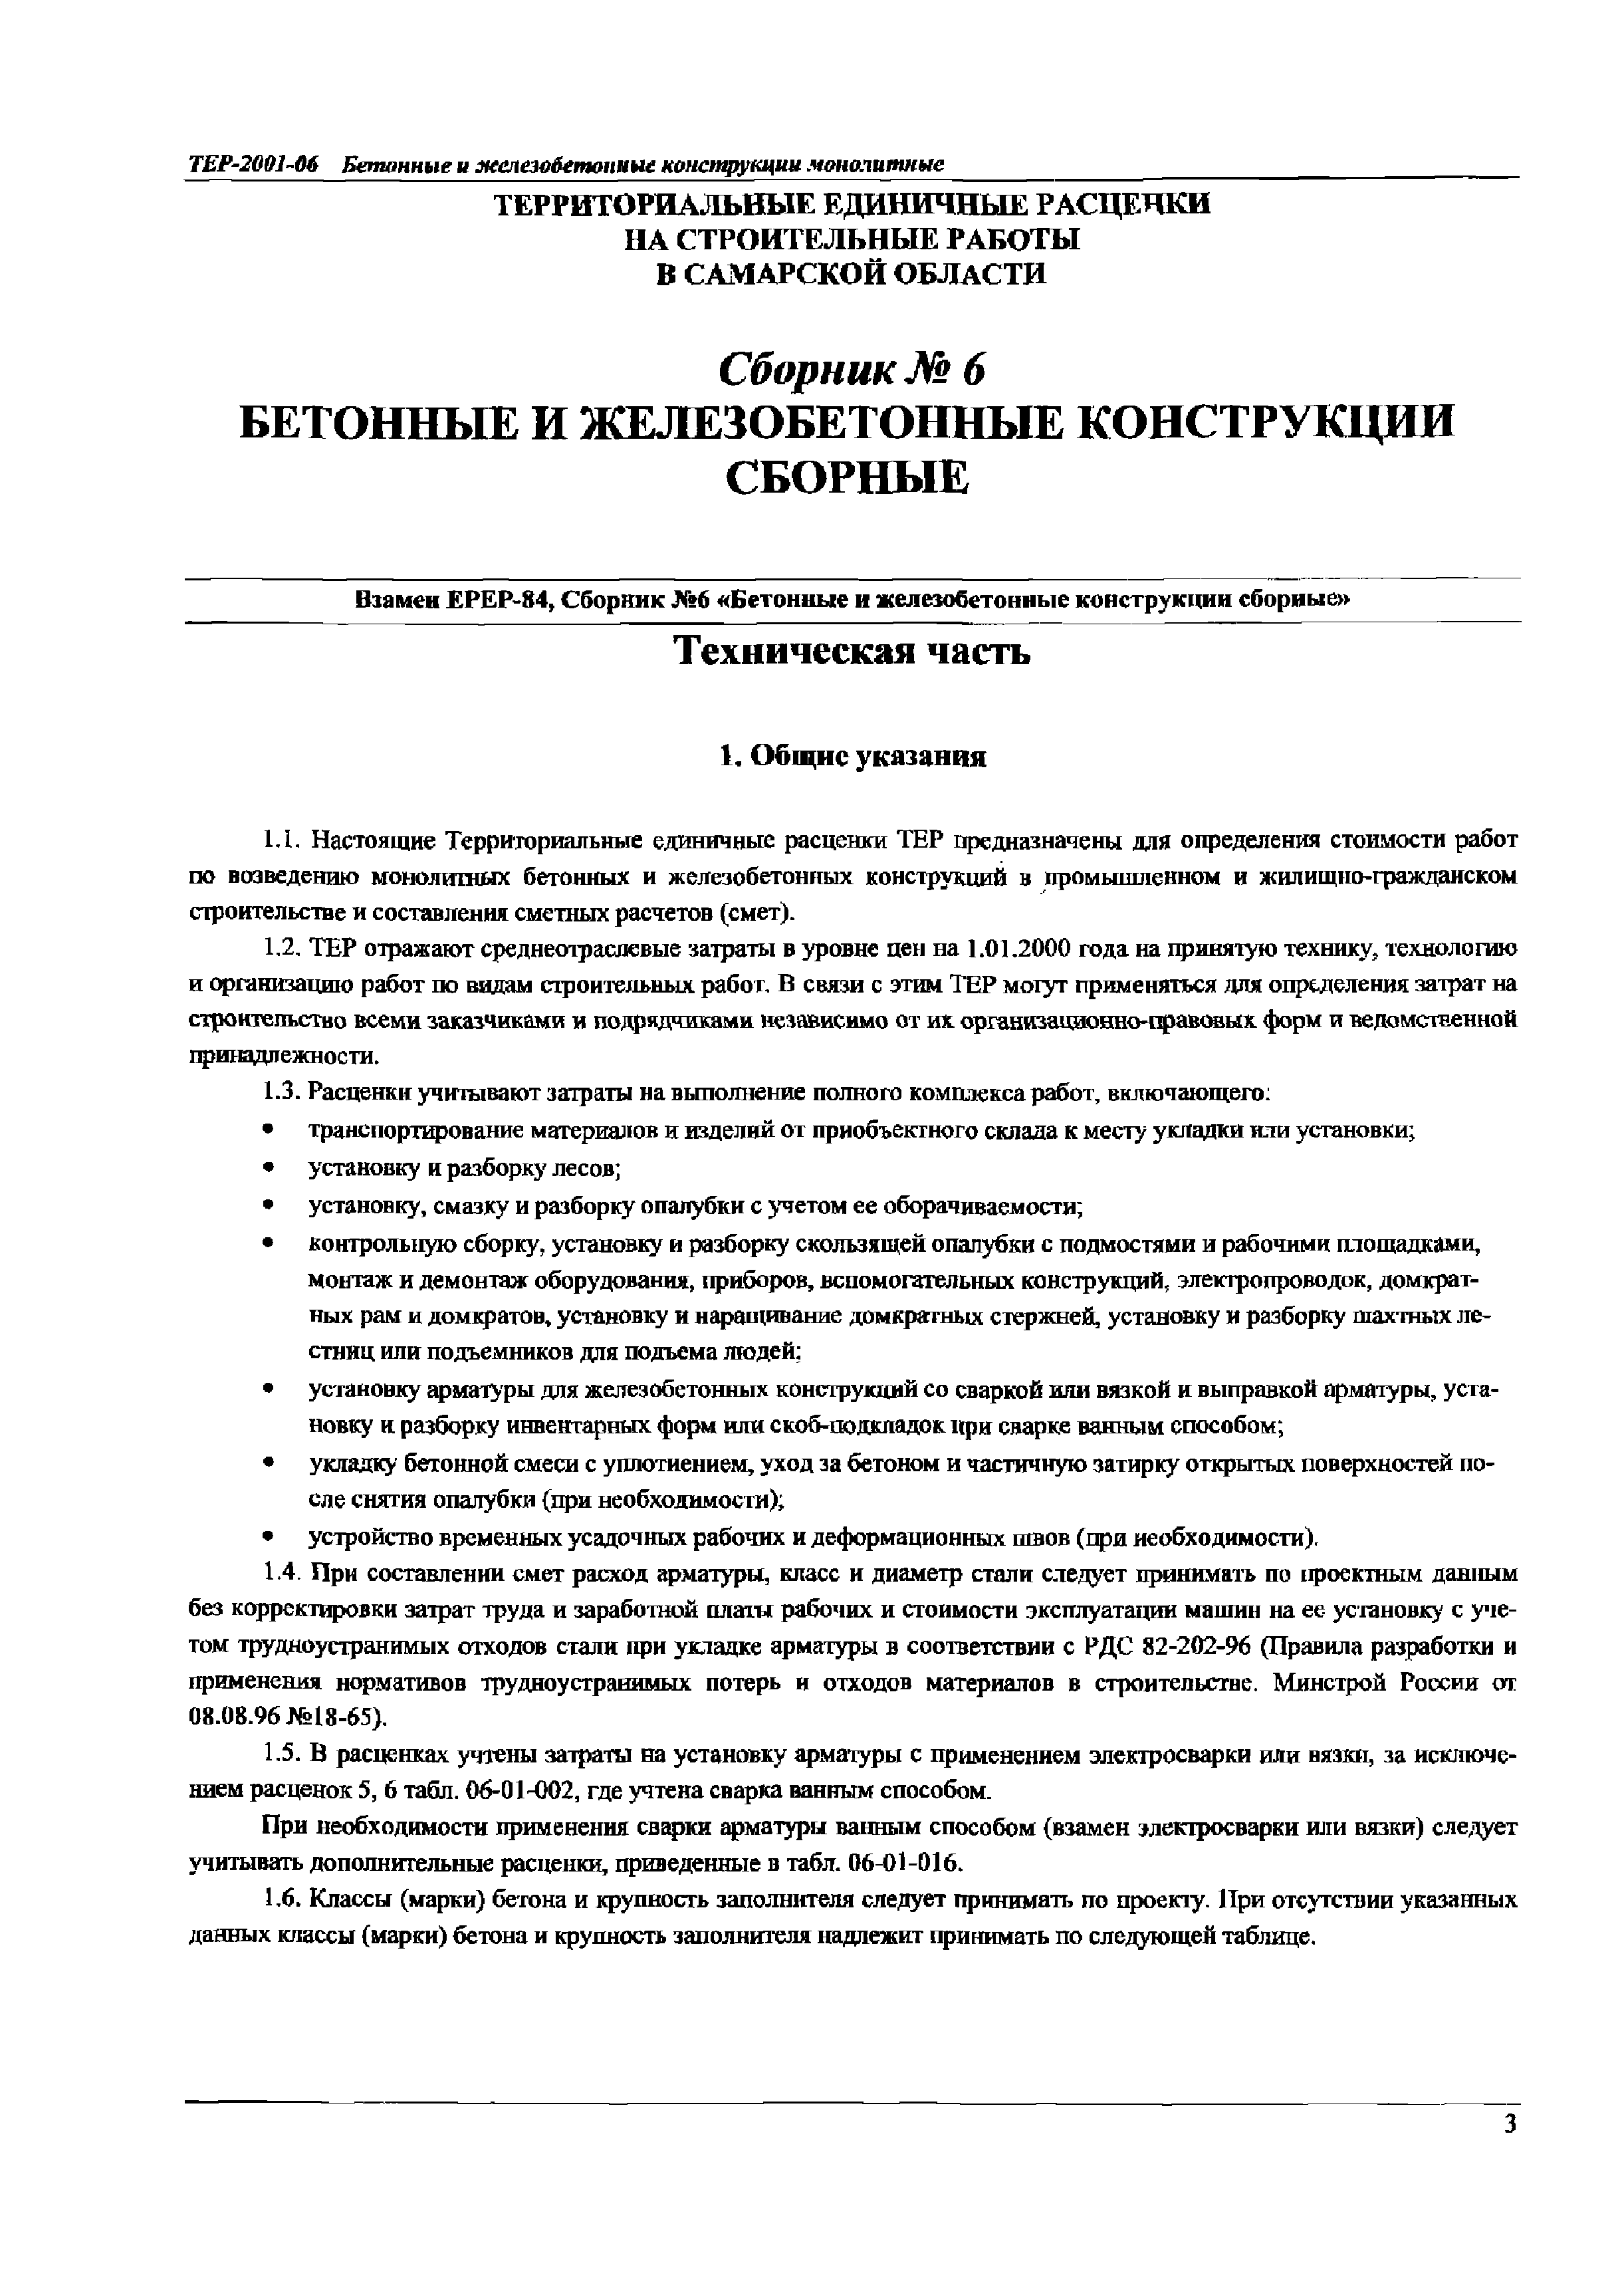 ТЕР Самарская область 2001-06